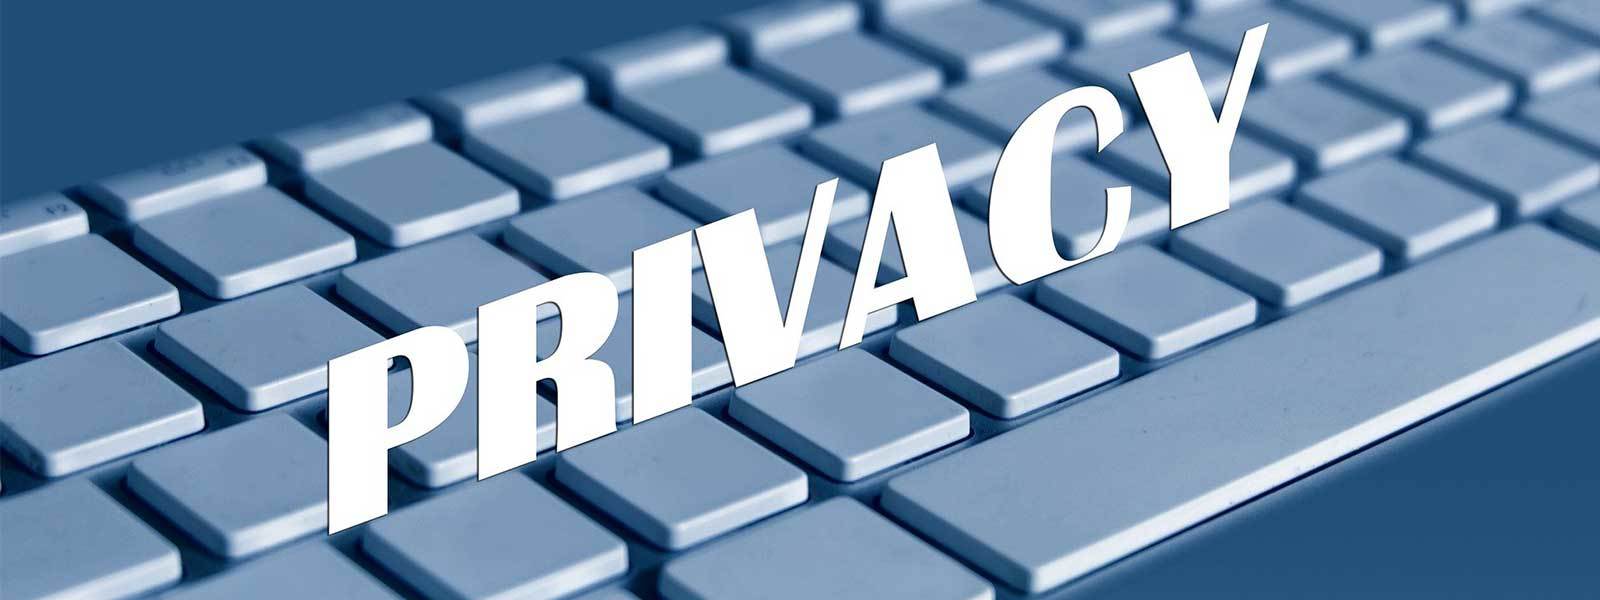 Relazione Garante Privacy 2019: i numeri sulle sanzioni e sui controlli